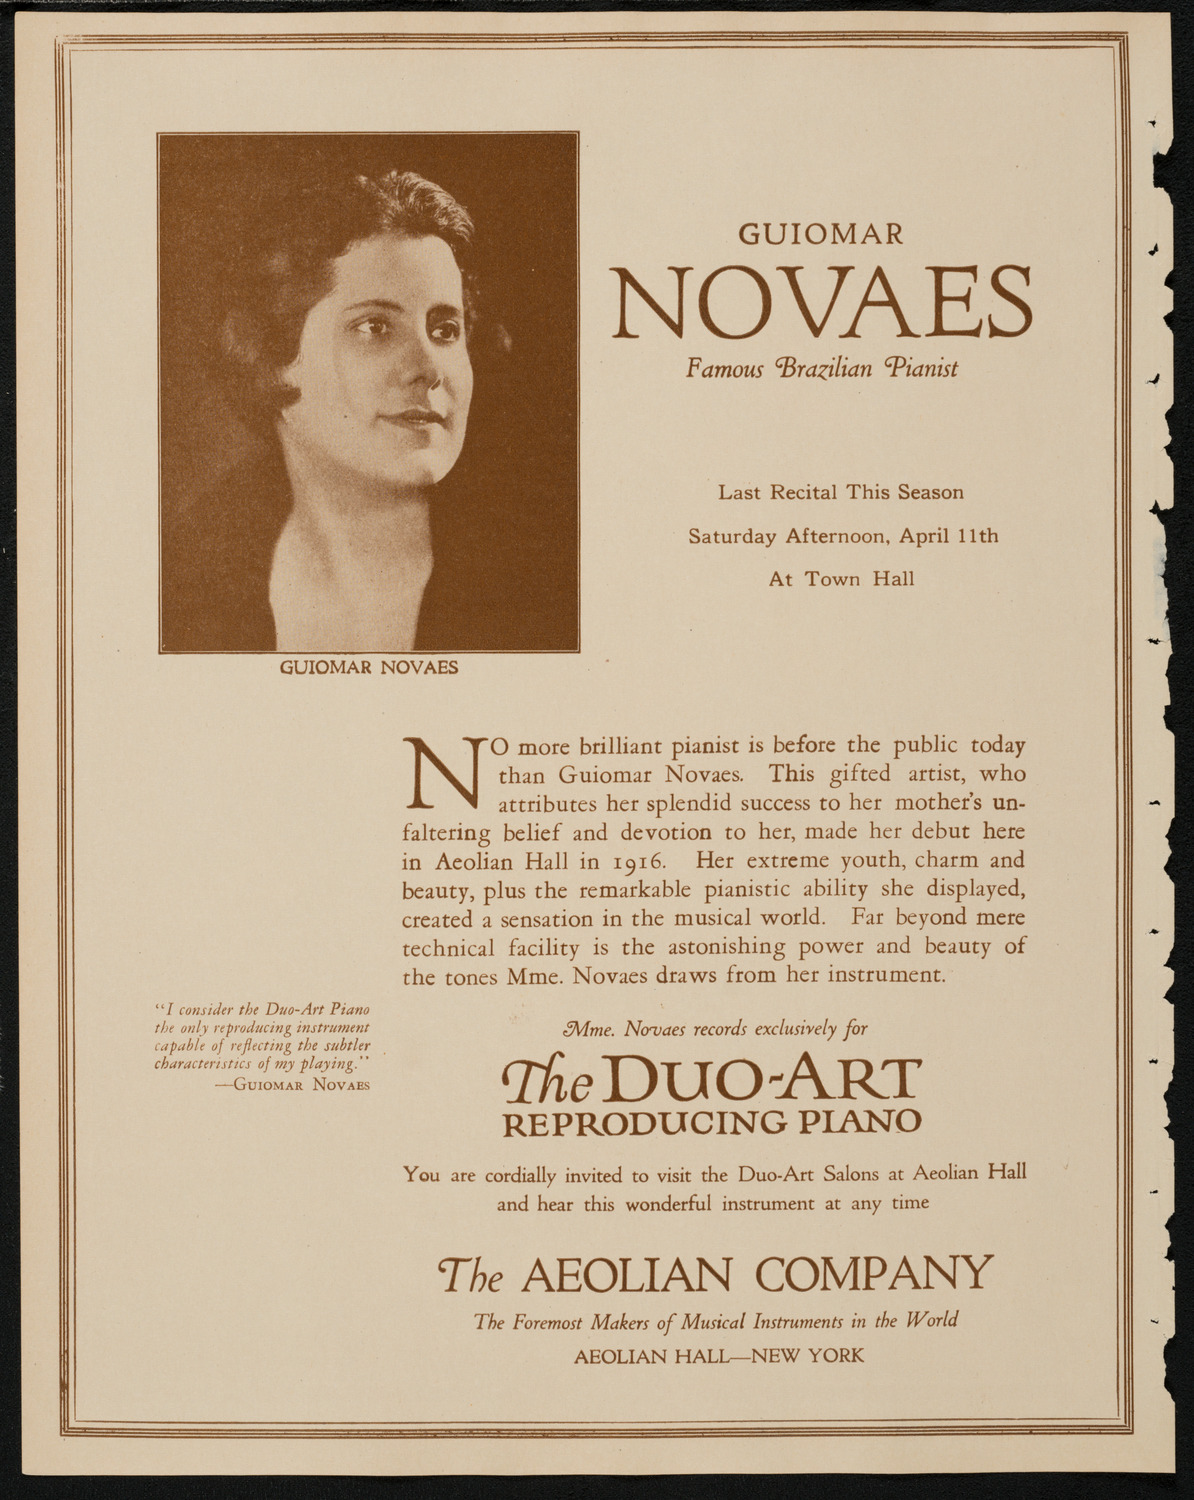 Boston Symphony Orchestra, April 9, 1925, program page 2